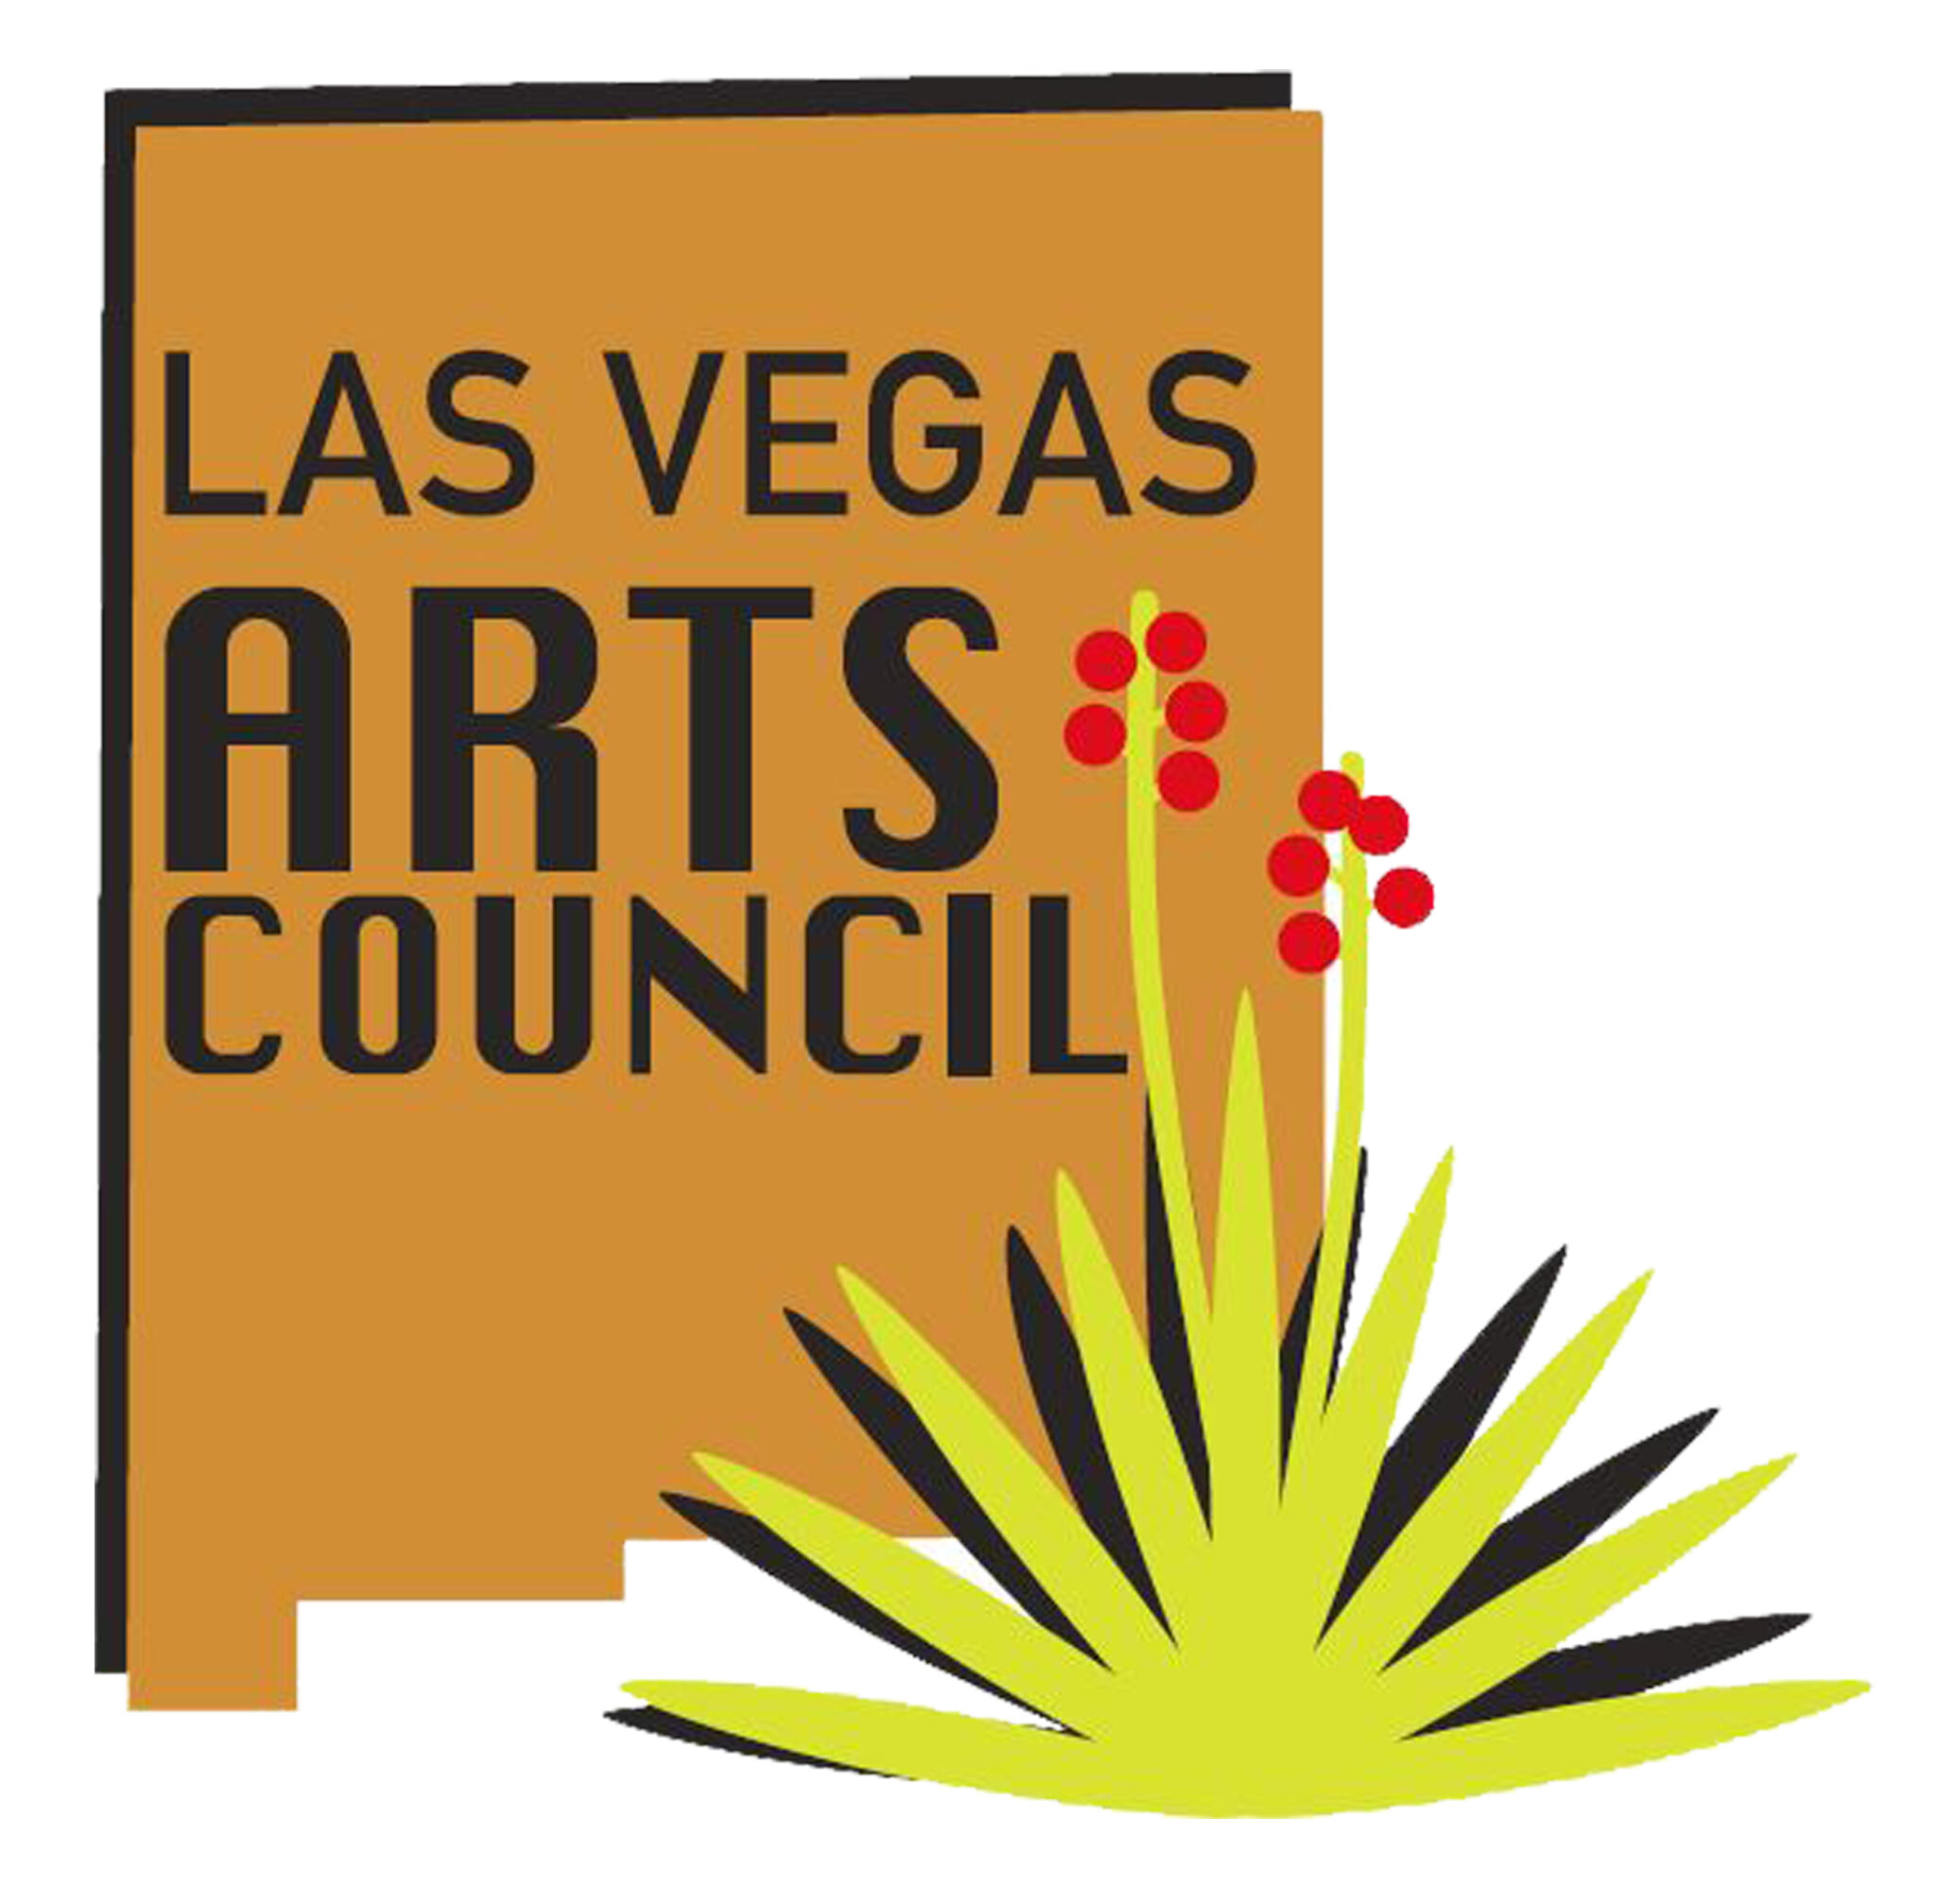 Las Vegas Arts Council